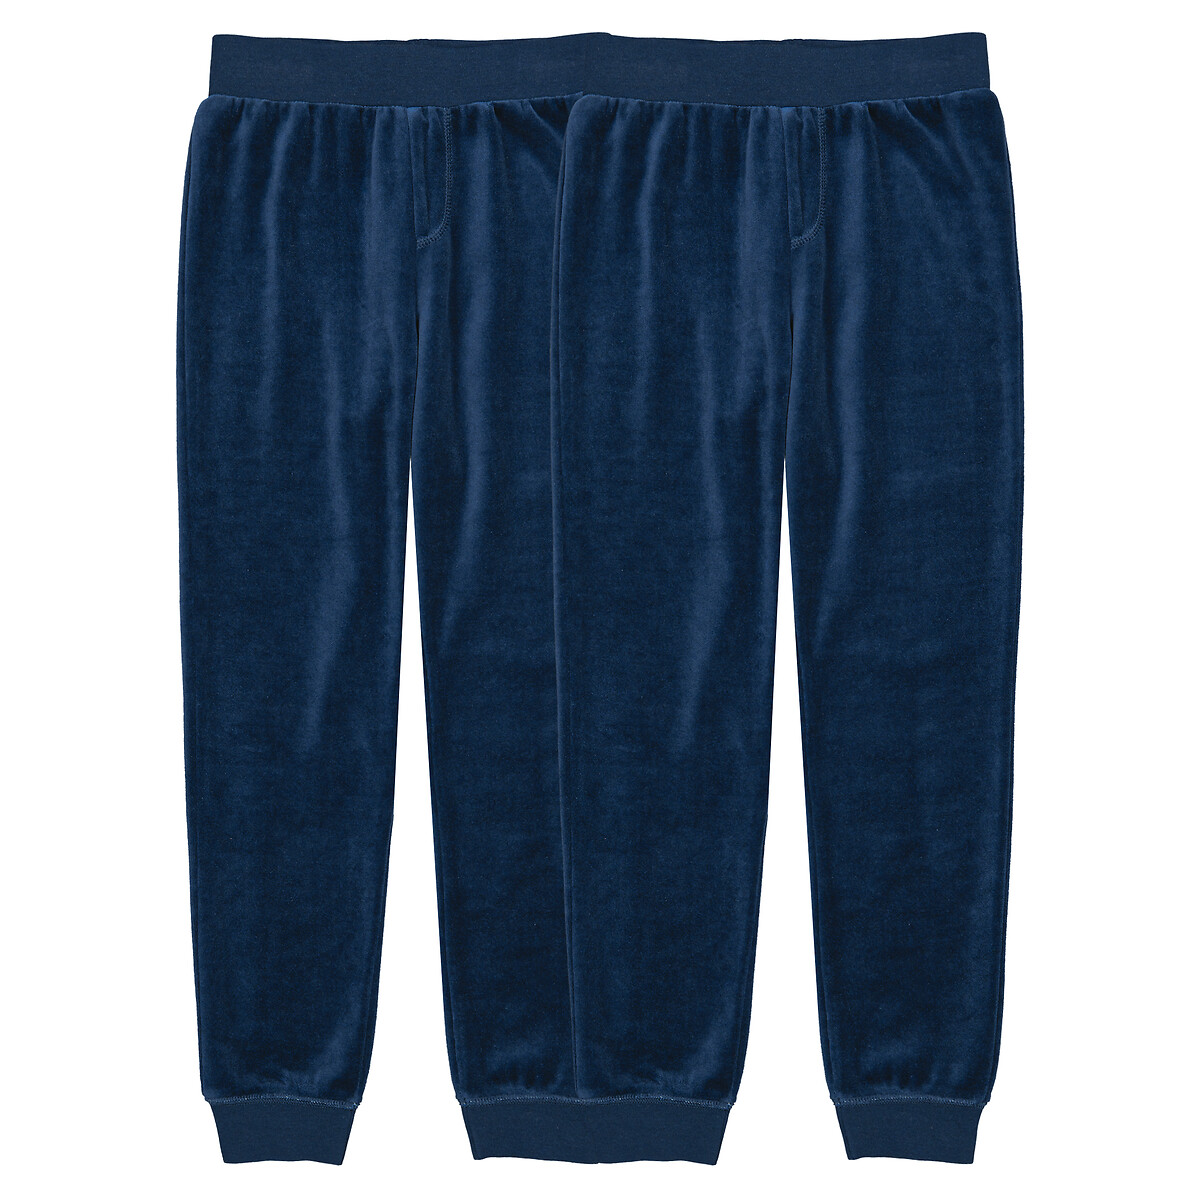 Комплект из двух брюк пижамных из велюра 10 лет - 138 см синий комплект из трех маек без рукавов 10 лет 138 см синий